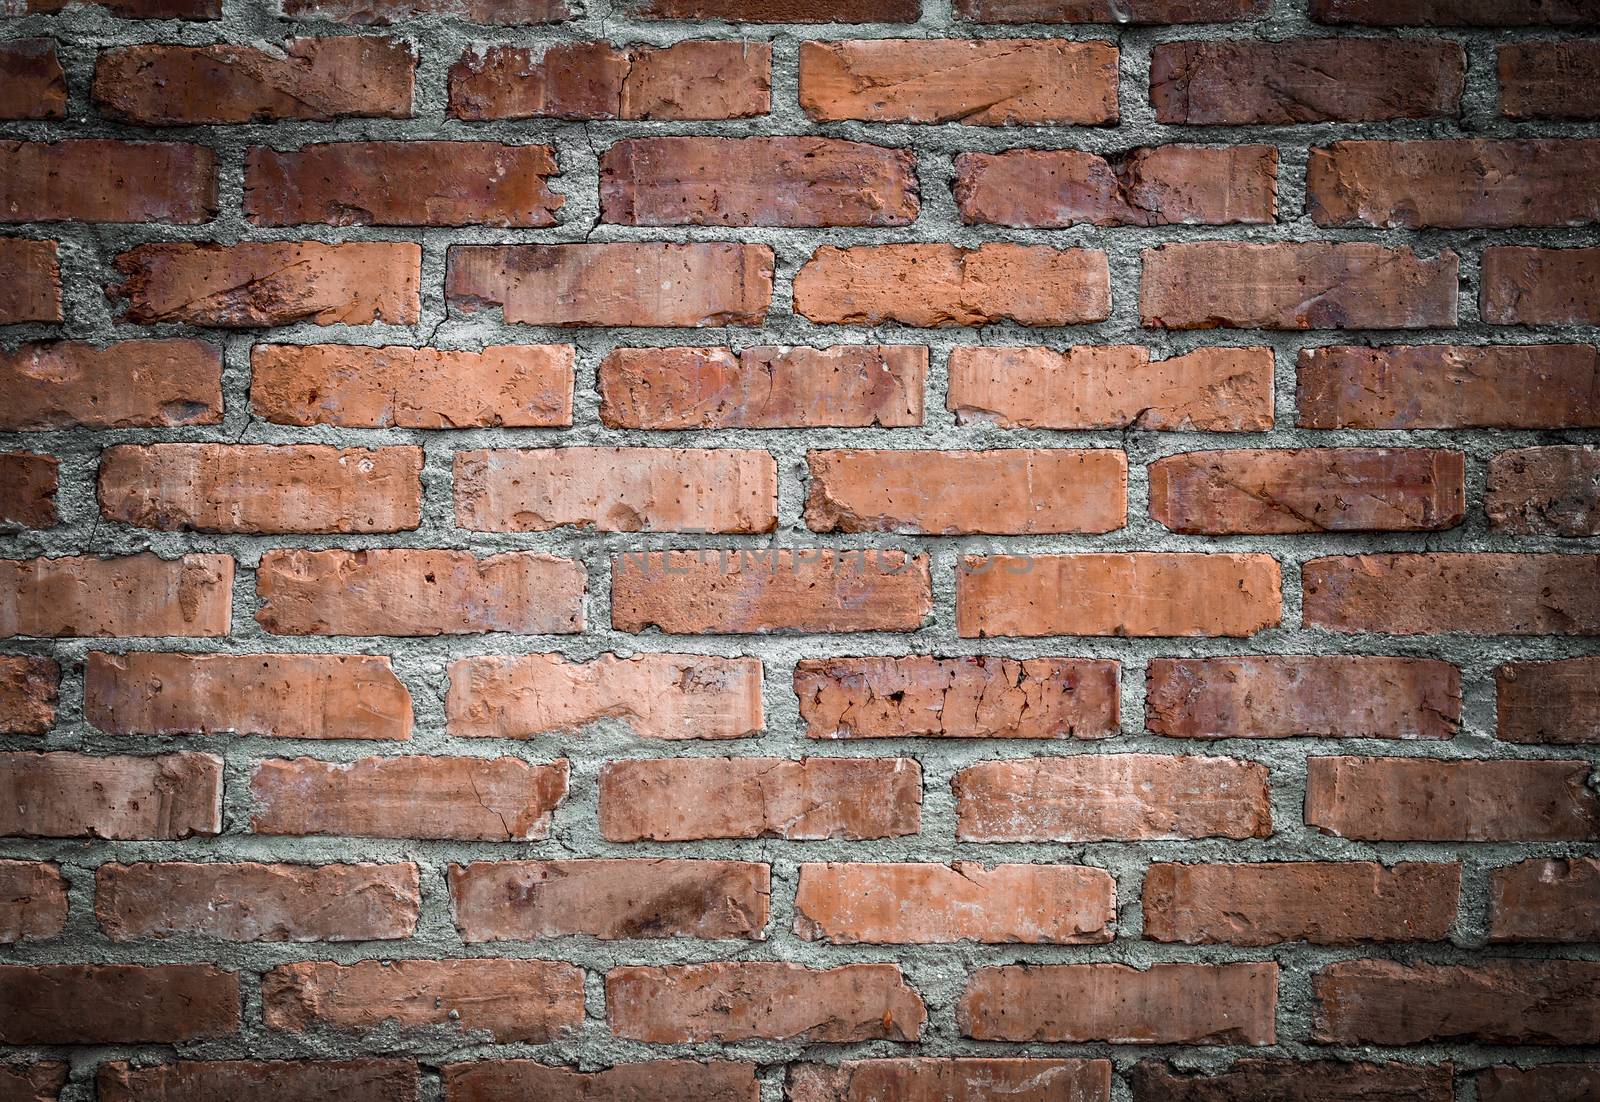 Vintage brick wall background by germanopoli